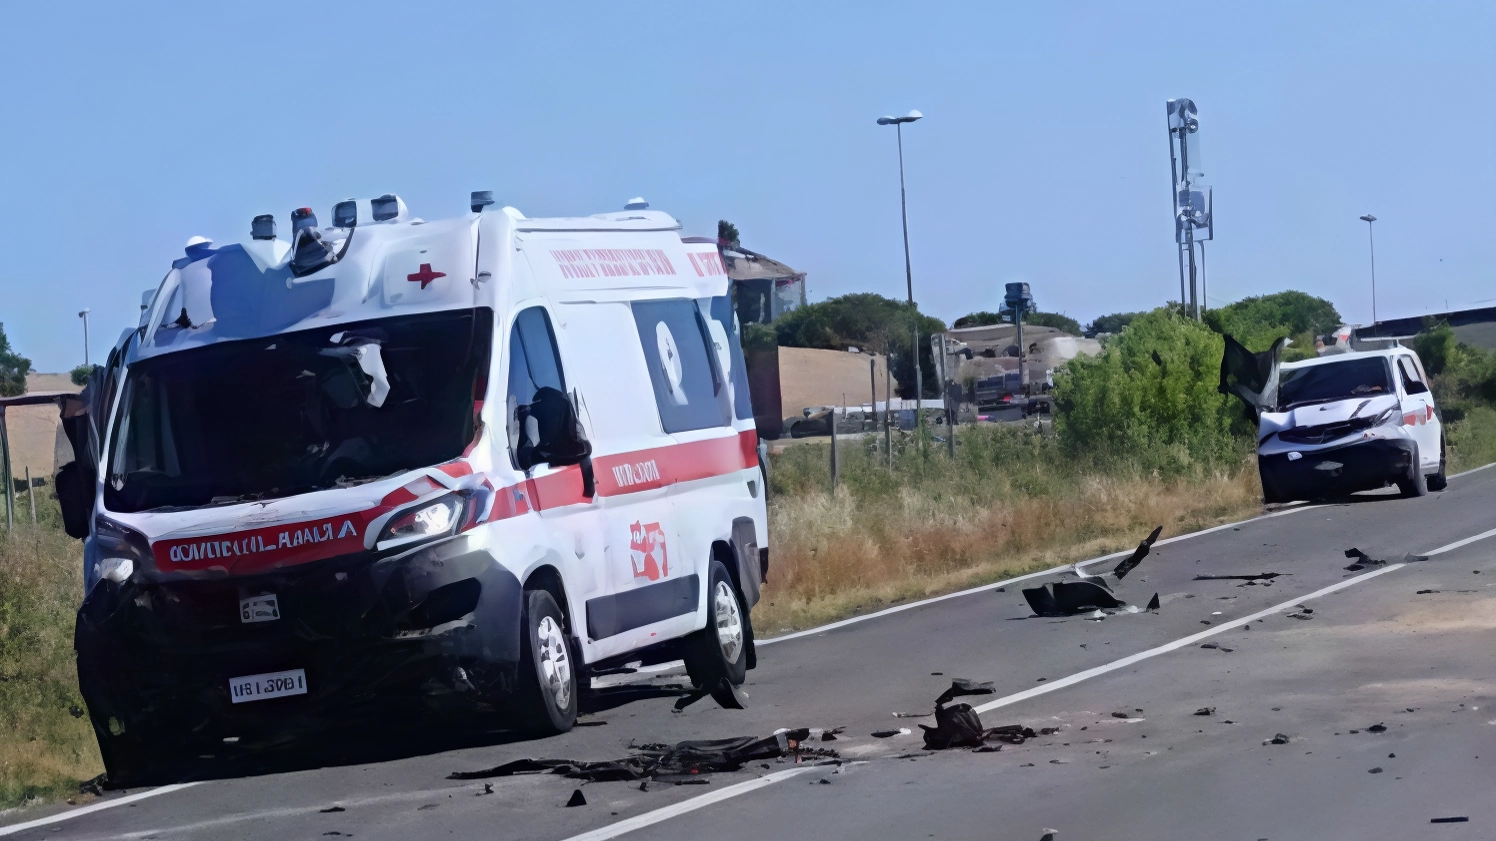 Tre feriti, uno grave, in due incidenti a Grosseto e Gavorrano. Auto e furgone coinvolti, strada chiusa. Interventi di soccorso e forze dell'ordine sul posto.